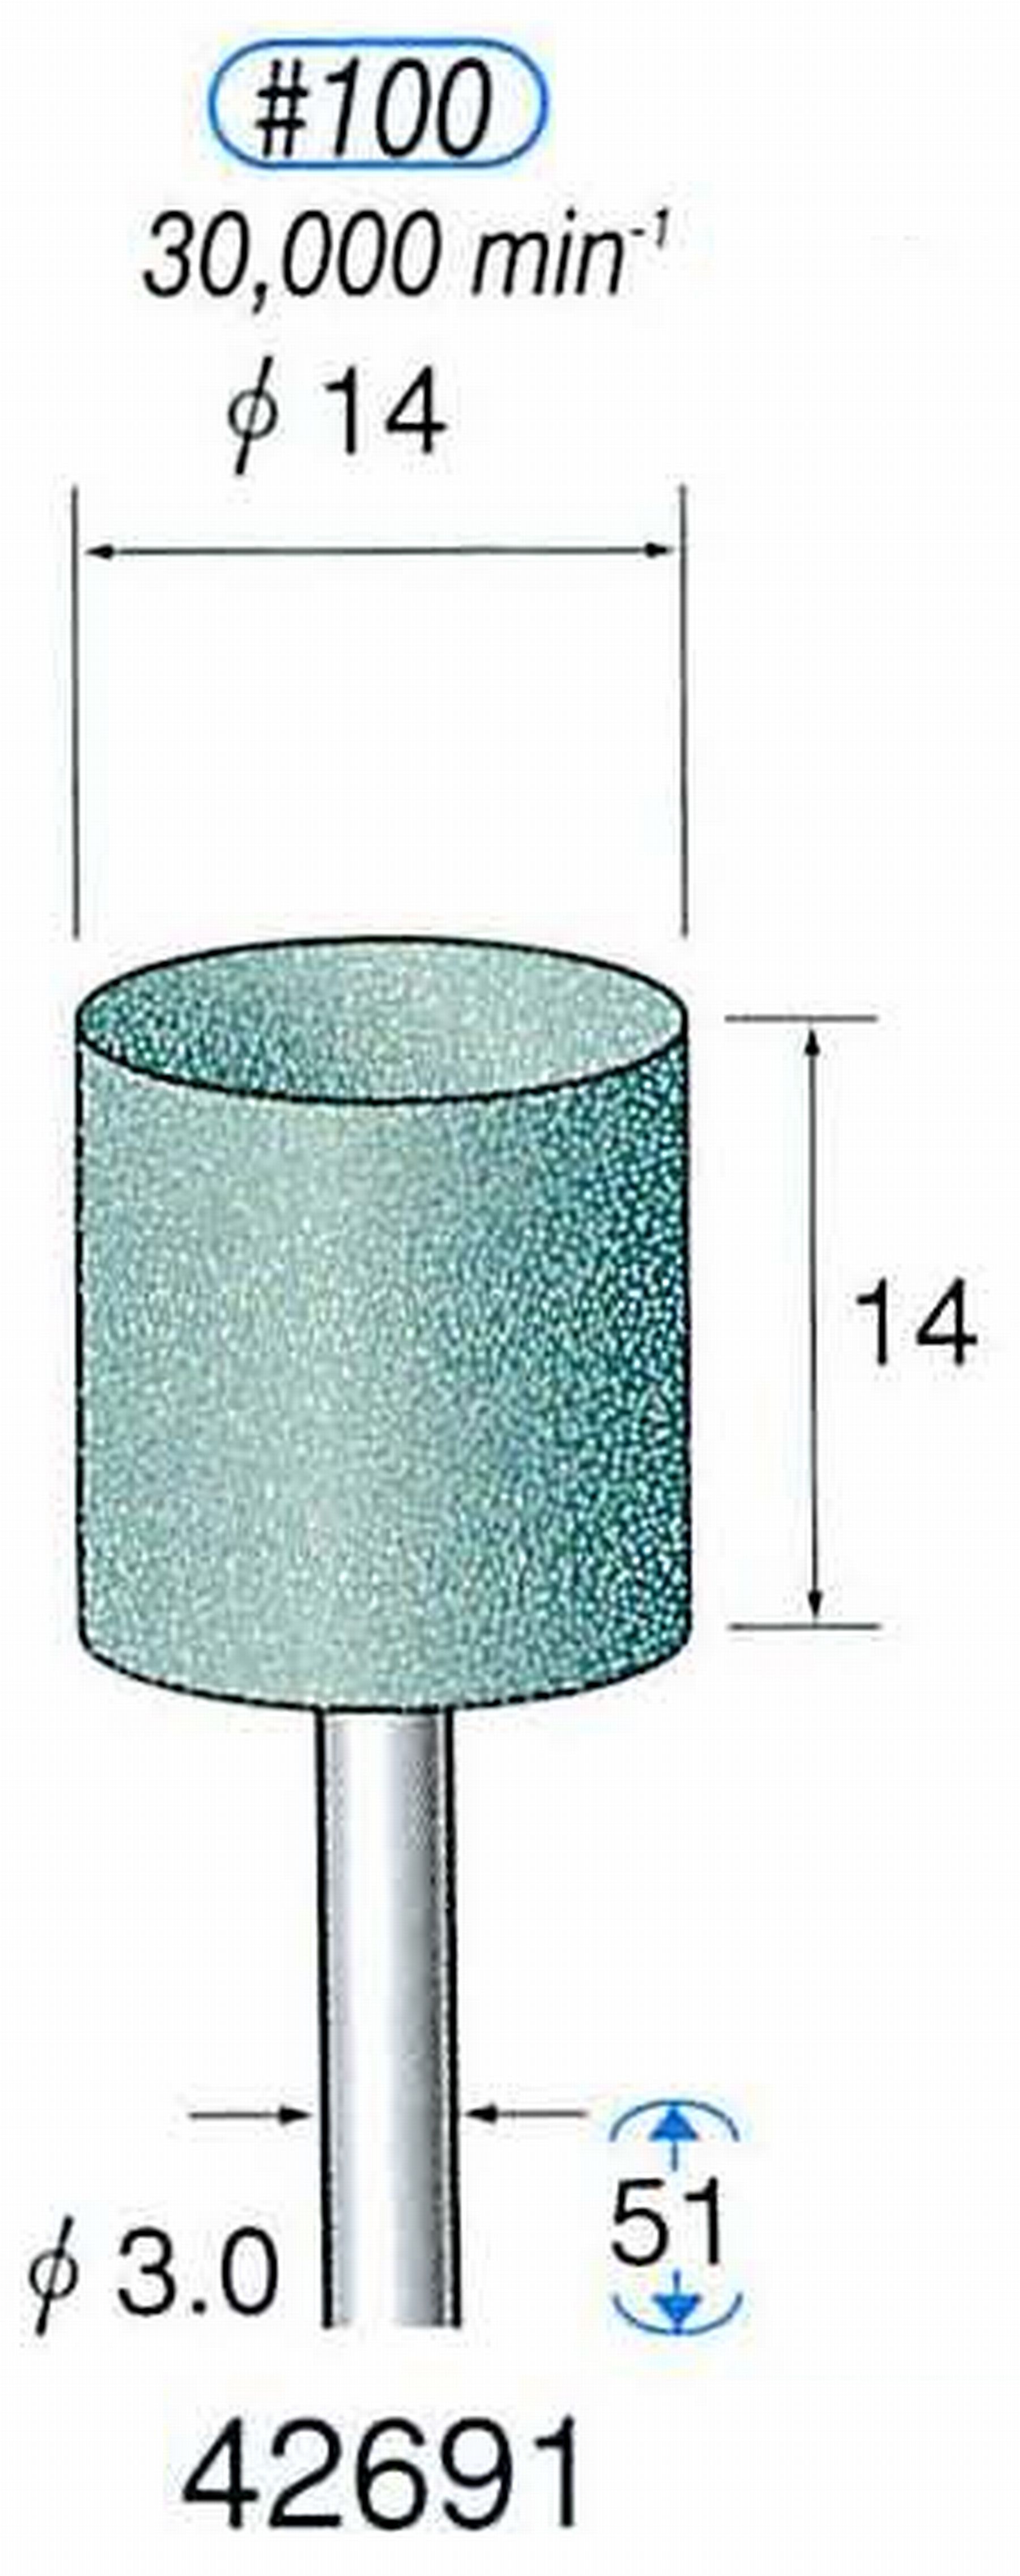 ナカニシ/NAKANISHI 軸付砥石(GC砥粒) グリーン砥石 軸径(シャンク) φ3.0mm 42691